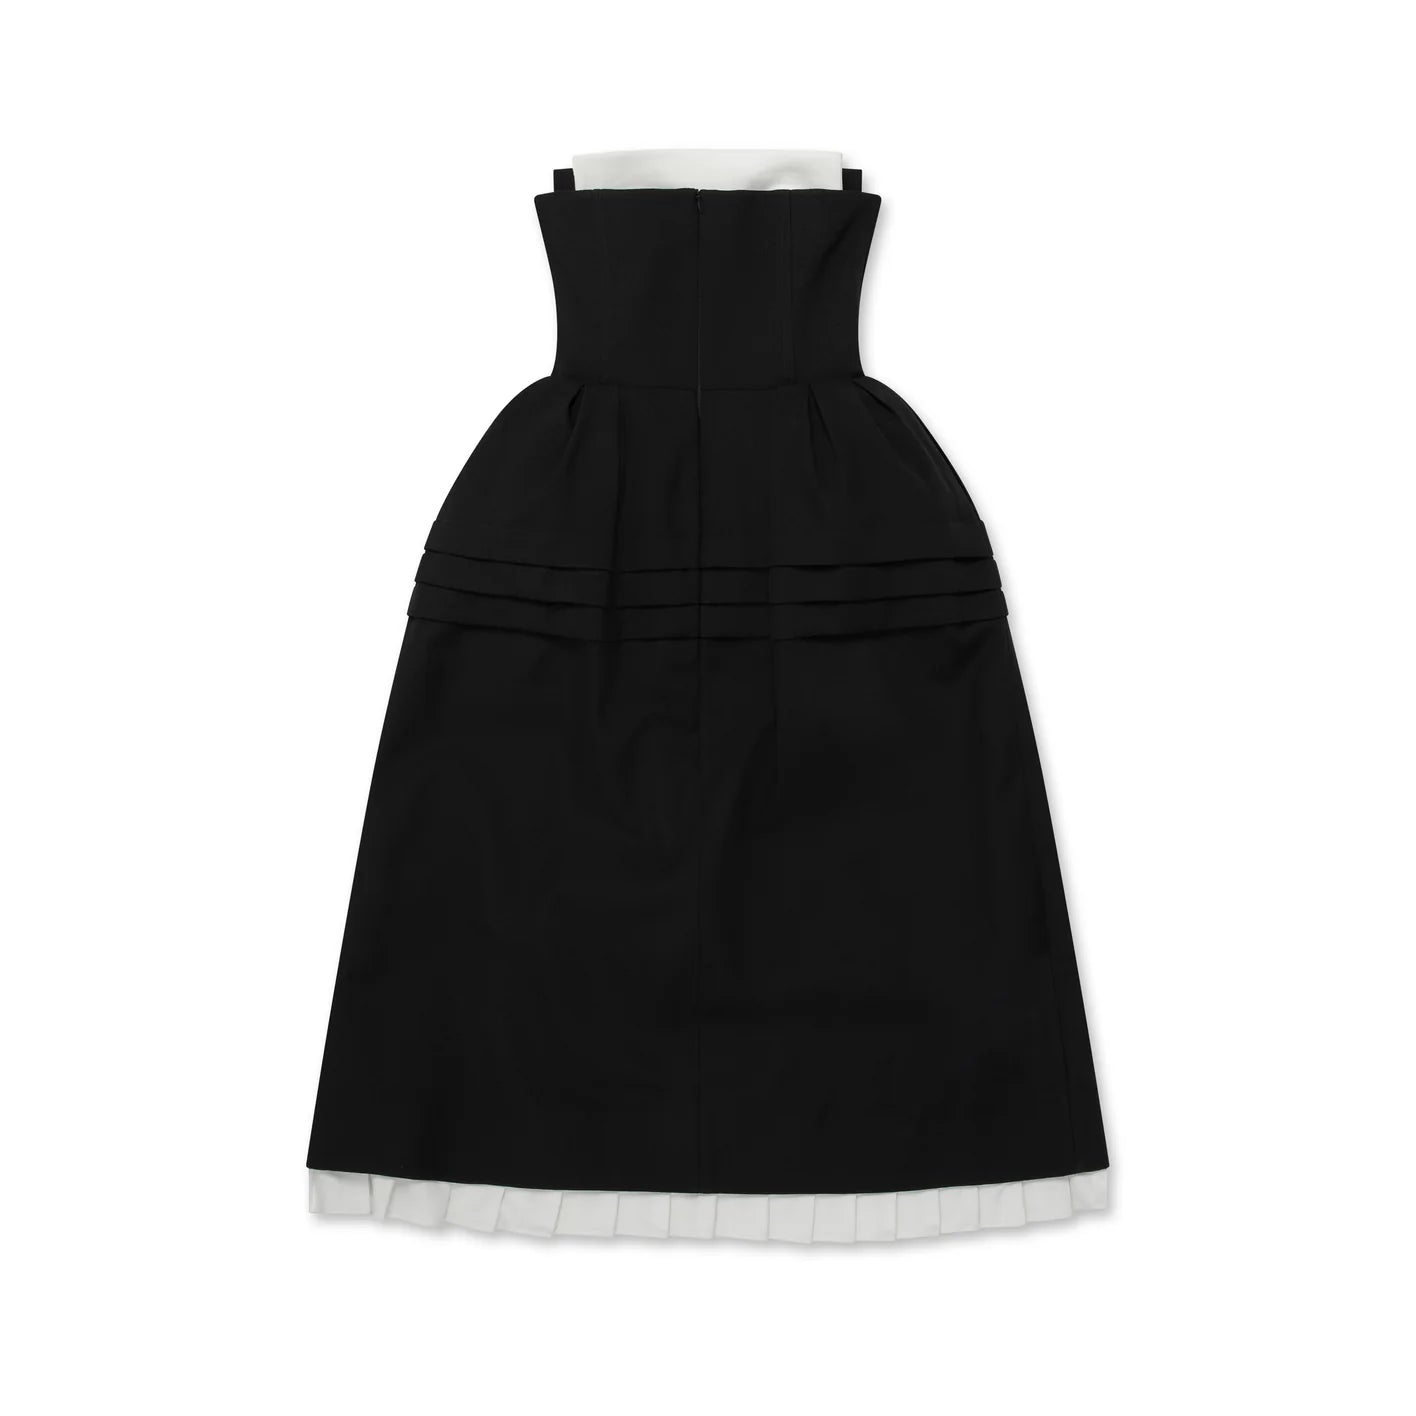 SHUSHU/TONG - Women's Tuck Flower Bud Dress - (Black)| Dover